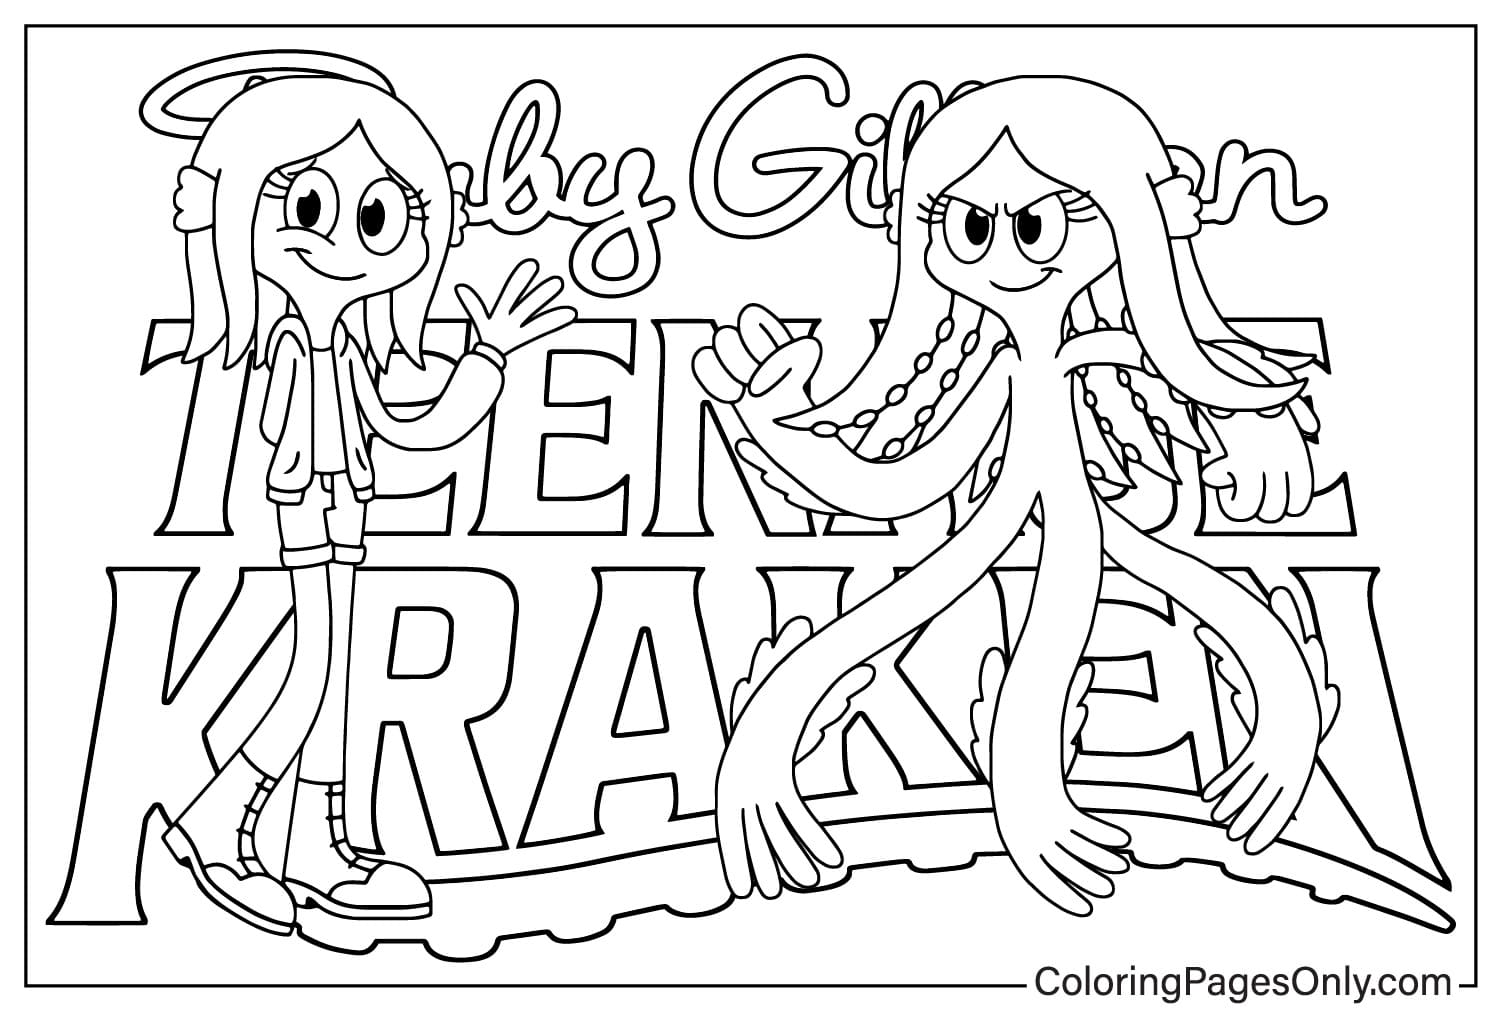 Ruby Gillman Teenage Kraken kleurplaat om af te drukken van Ruby Gillman Teenage Kraken